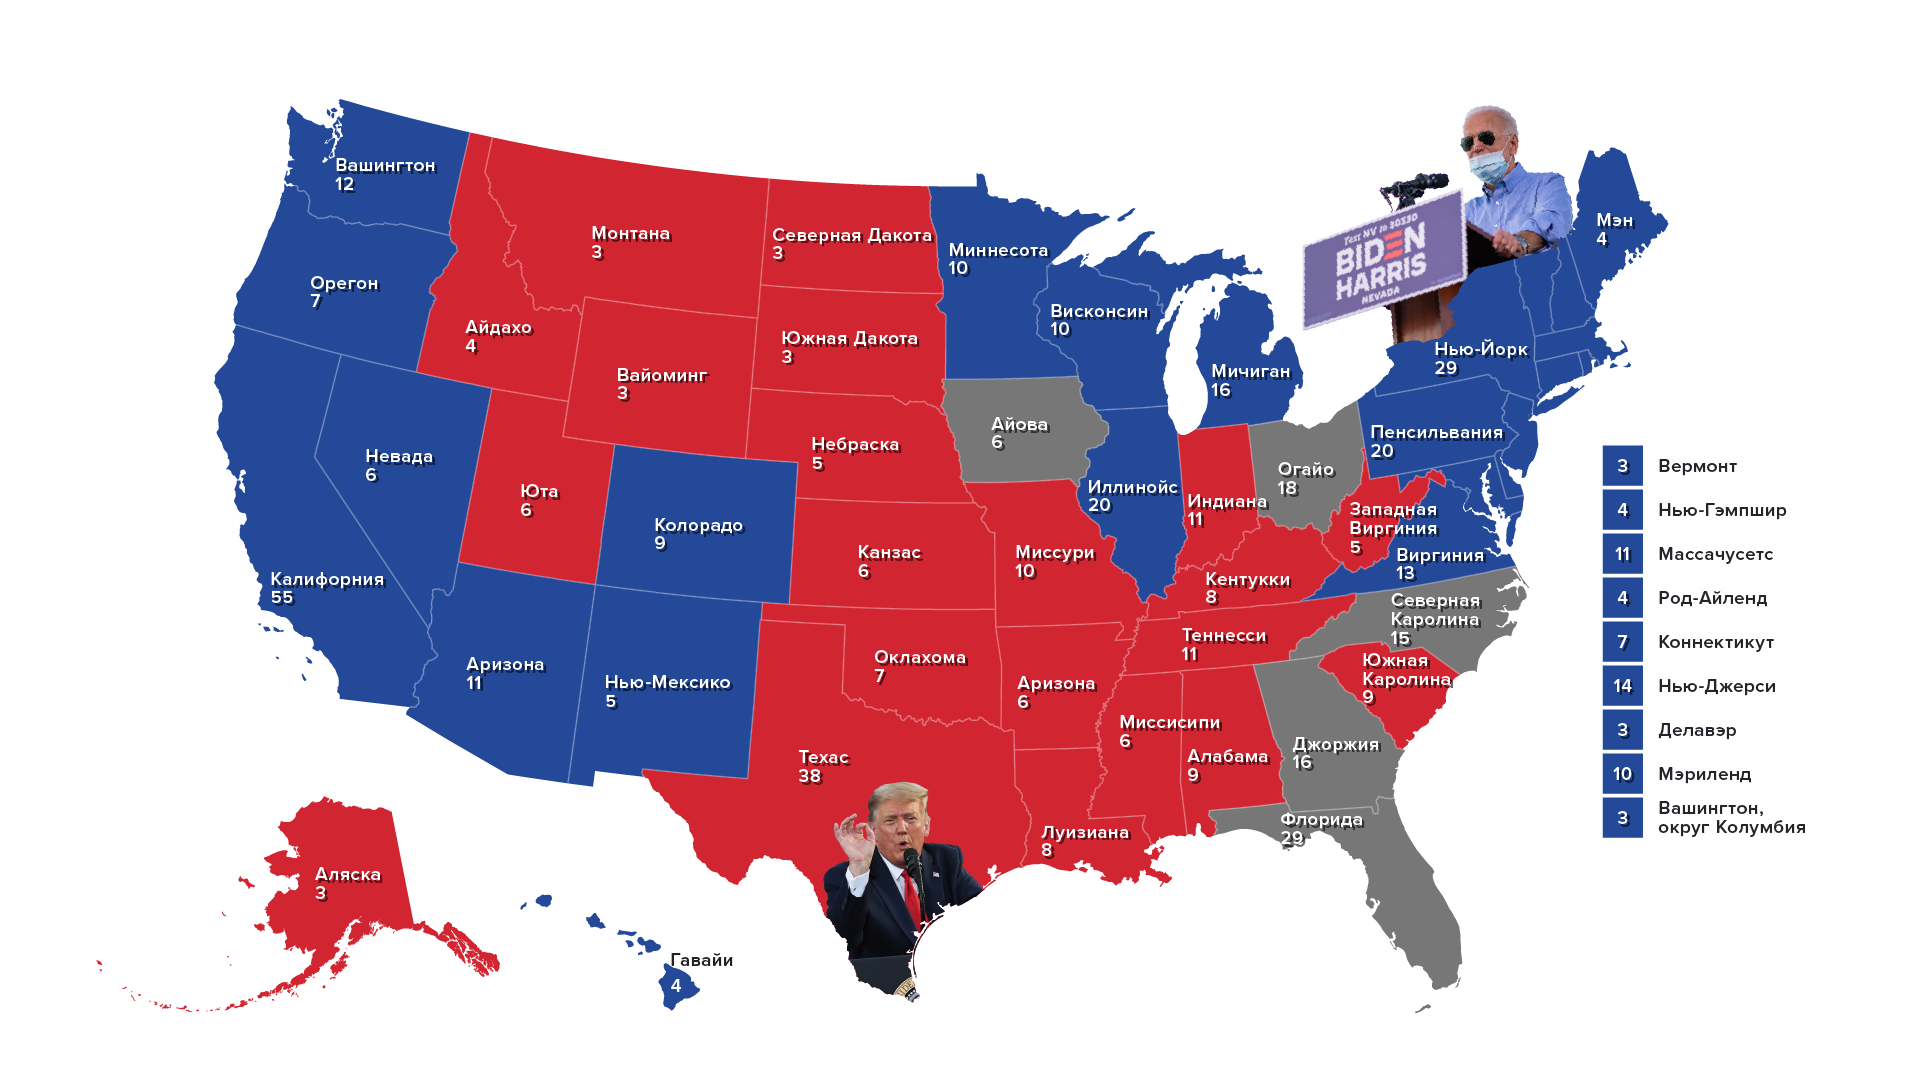 Республиканская демократия страны. Карта выборов в США по Штатам. Карта республиканцев и демократов в США. Штаты США демократы и республиканцы. Республиканские штаты США карта 2020.